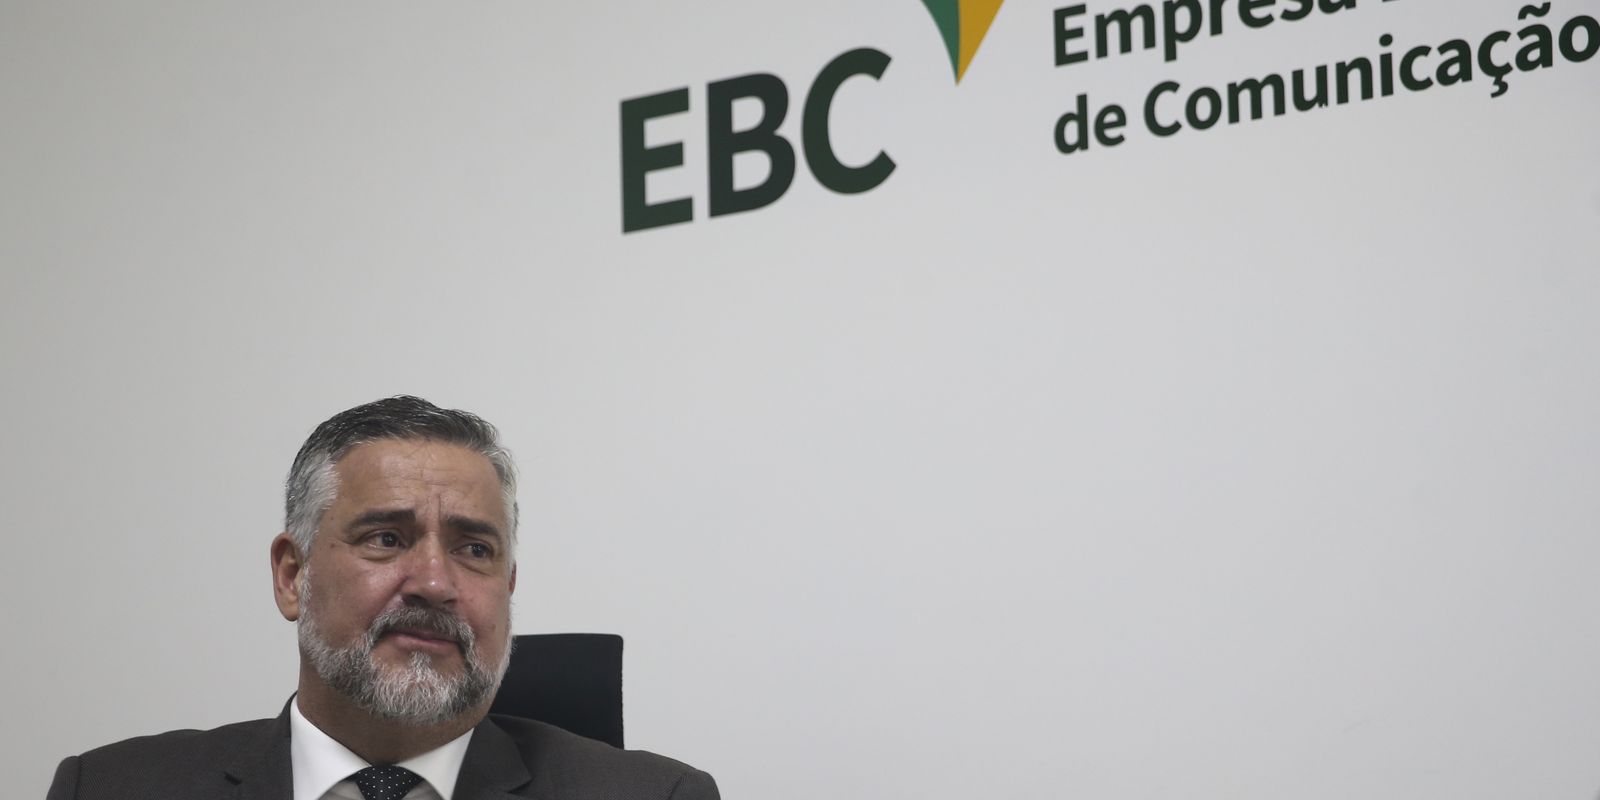 agenciabrasil.ebc.com.br